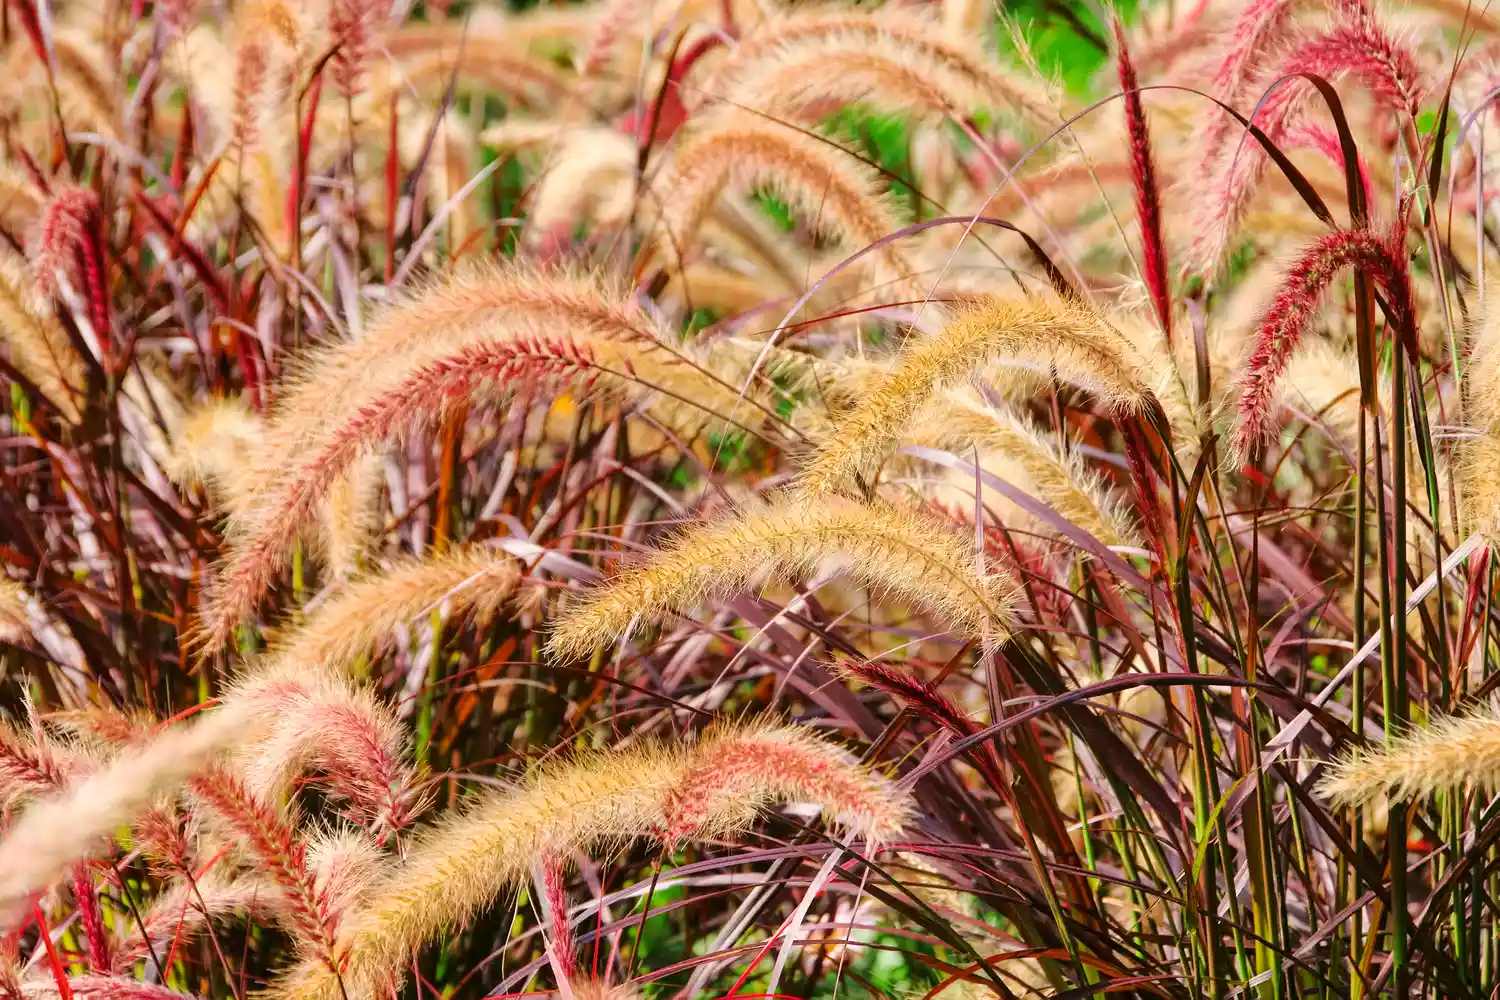 Red Head Fountain Grass